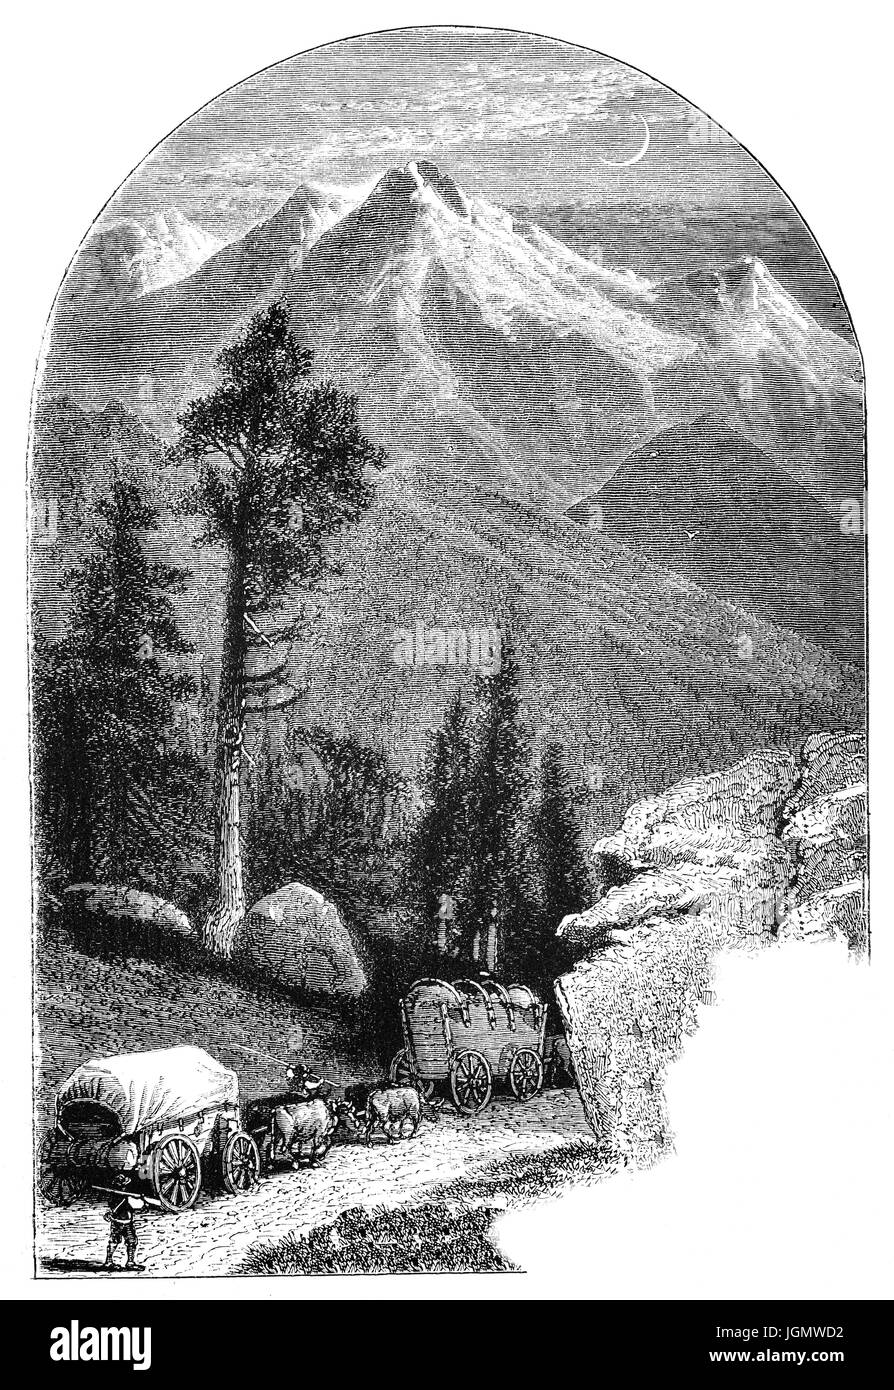 1879: Planwagen in einem Wagenzug Überquerung der Sierra Nevada Mountains, Kalifornien, Vereinigte Staaten von Amerika Stockfoto